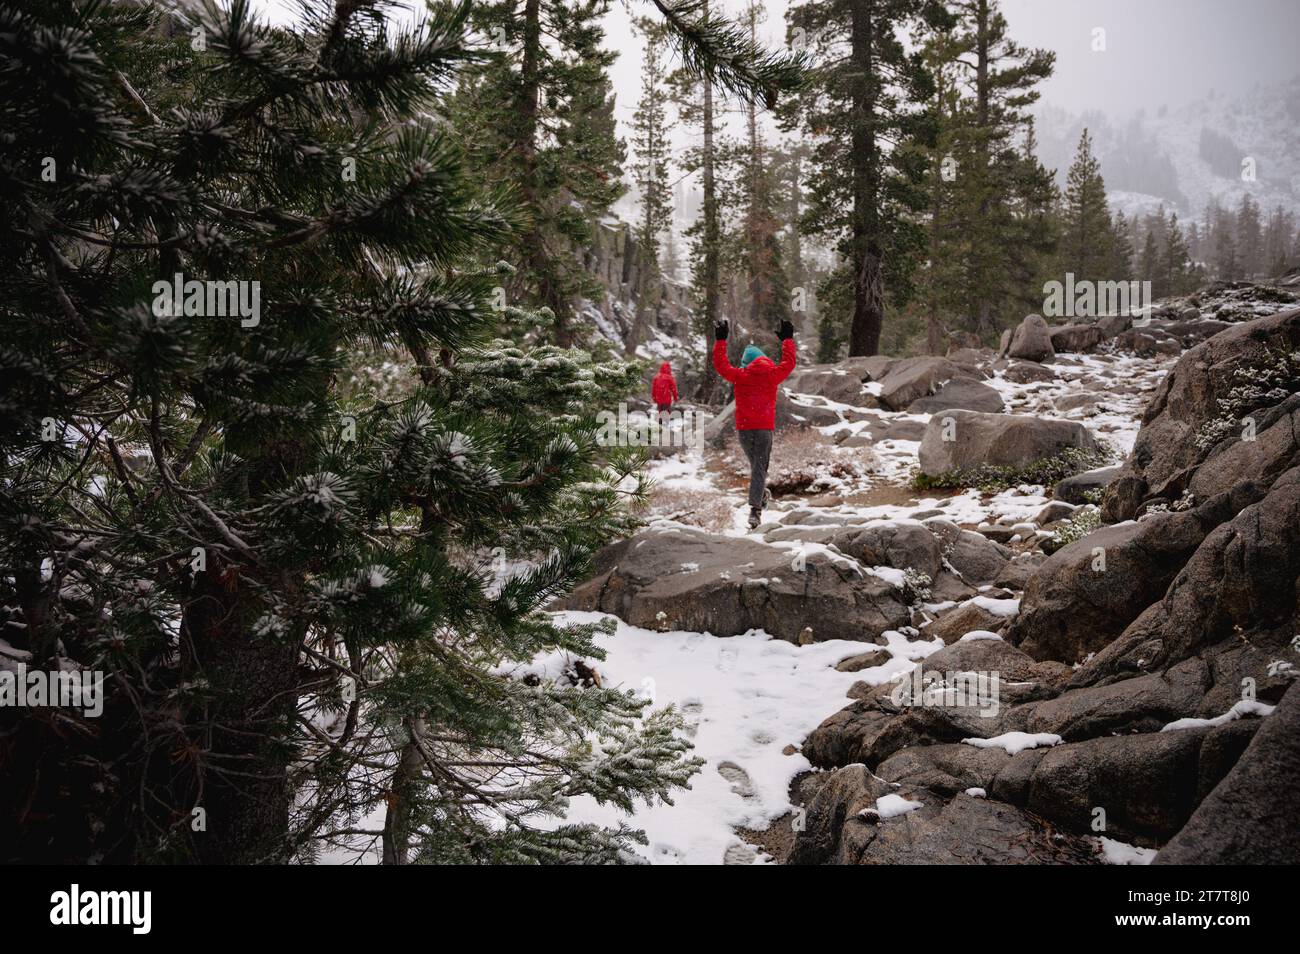 Les enfants en manteaux rouges sautent joyeusement sur un sentier dans la neige Banque D'Images